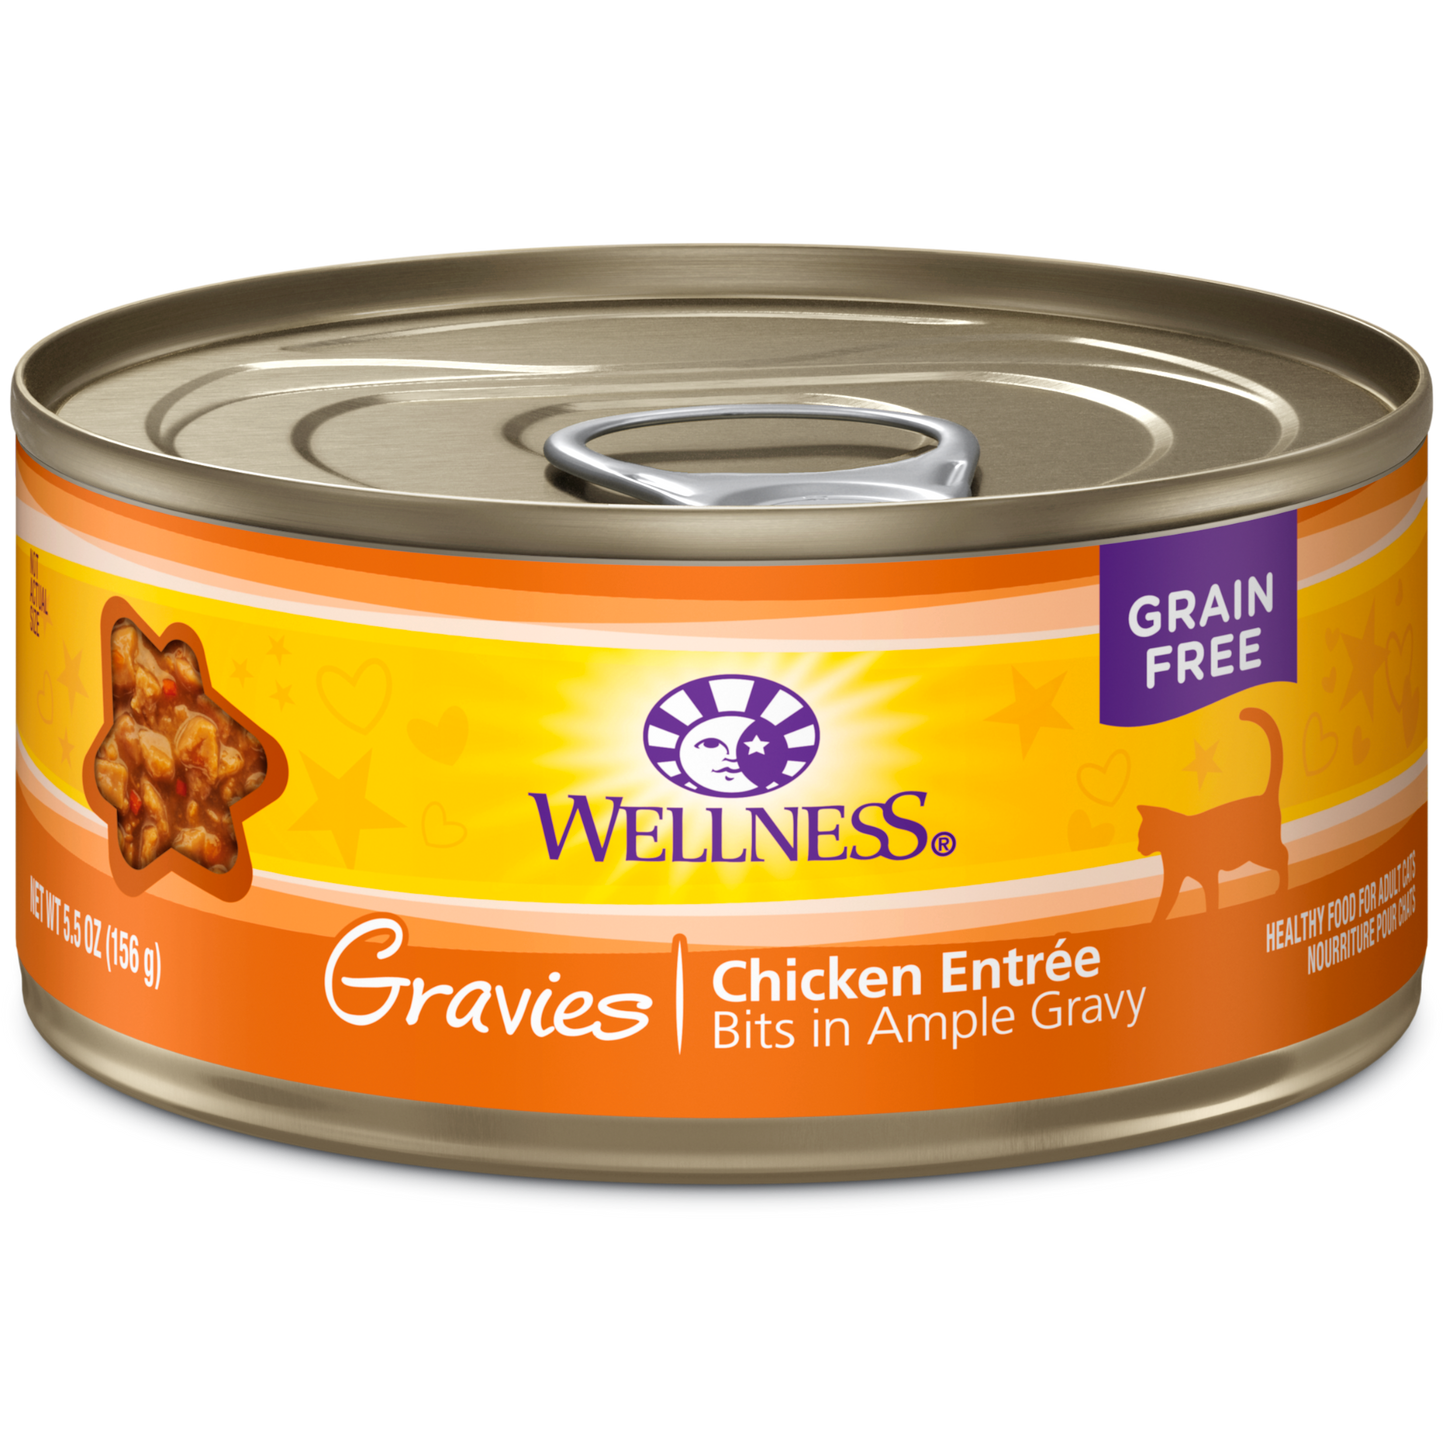 Wellness - Complete Health Gravies Chicken Dinner Wet Cat Food